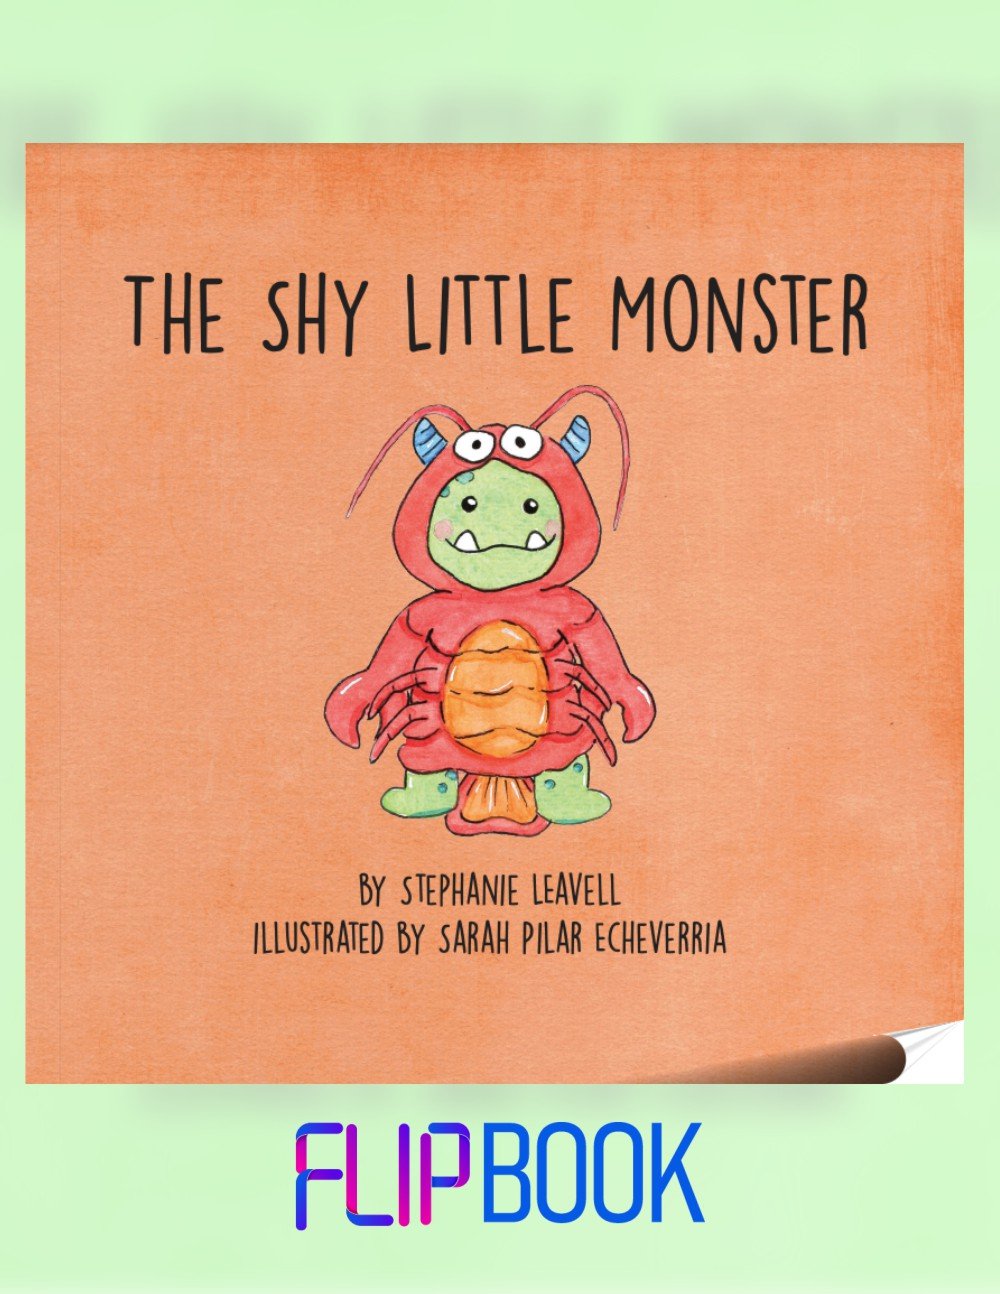 shy little monster flip book cover